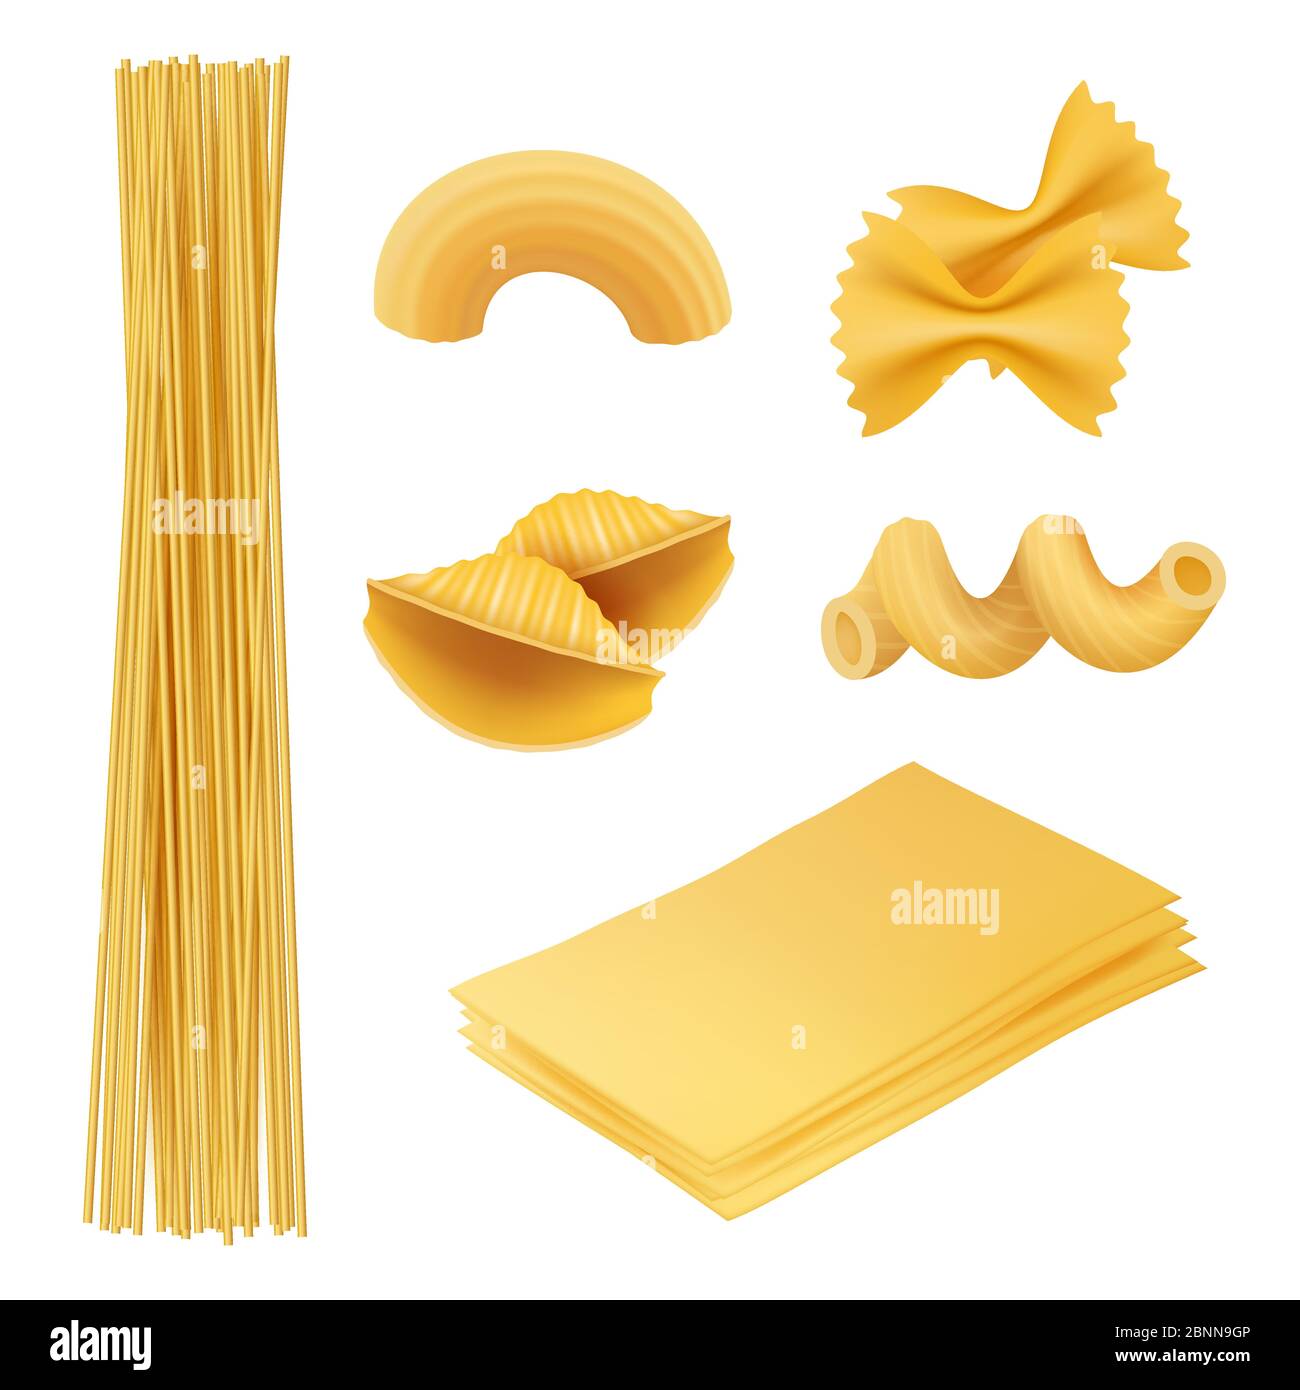 Pâtes réalistes. La nourriture italienne farfalle fusilli macaroni ingrédients de cuisine vecteur images de la cuisine traditionnelle Illustration de Vecteur